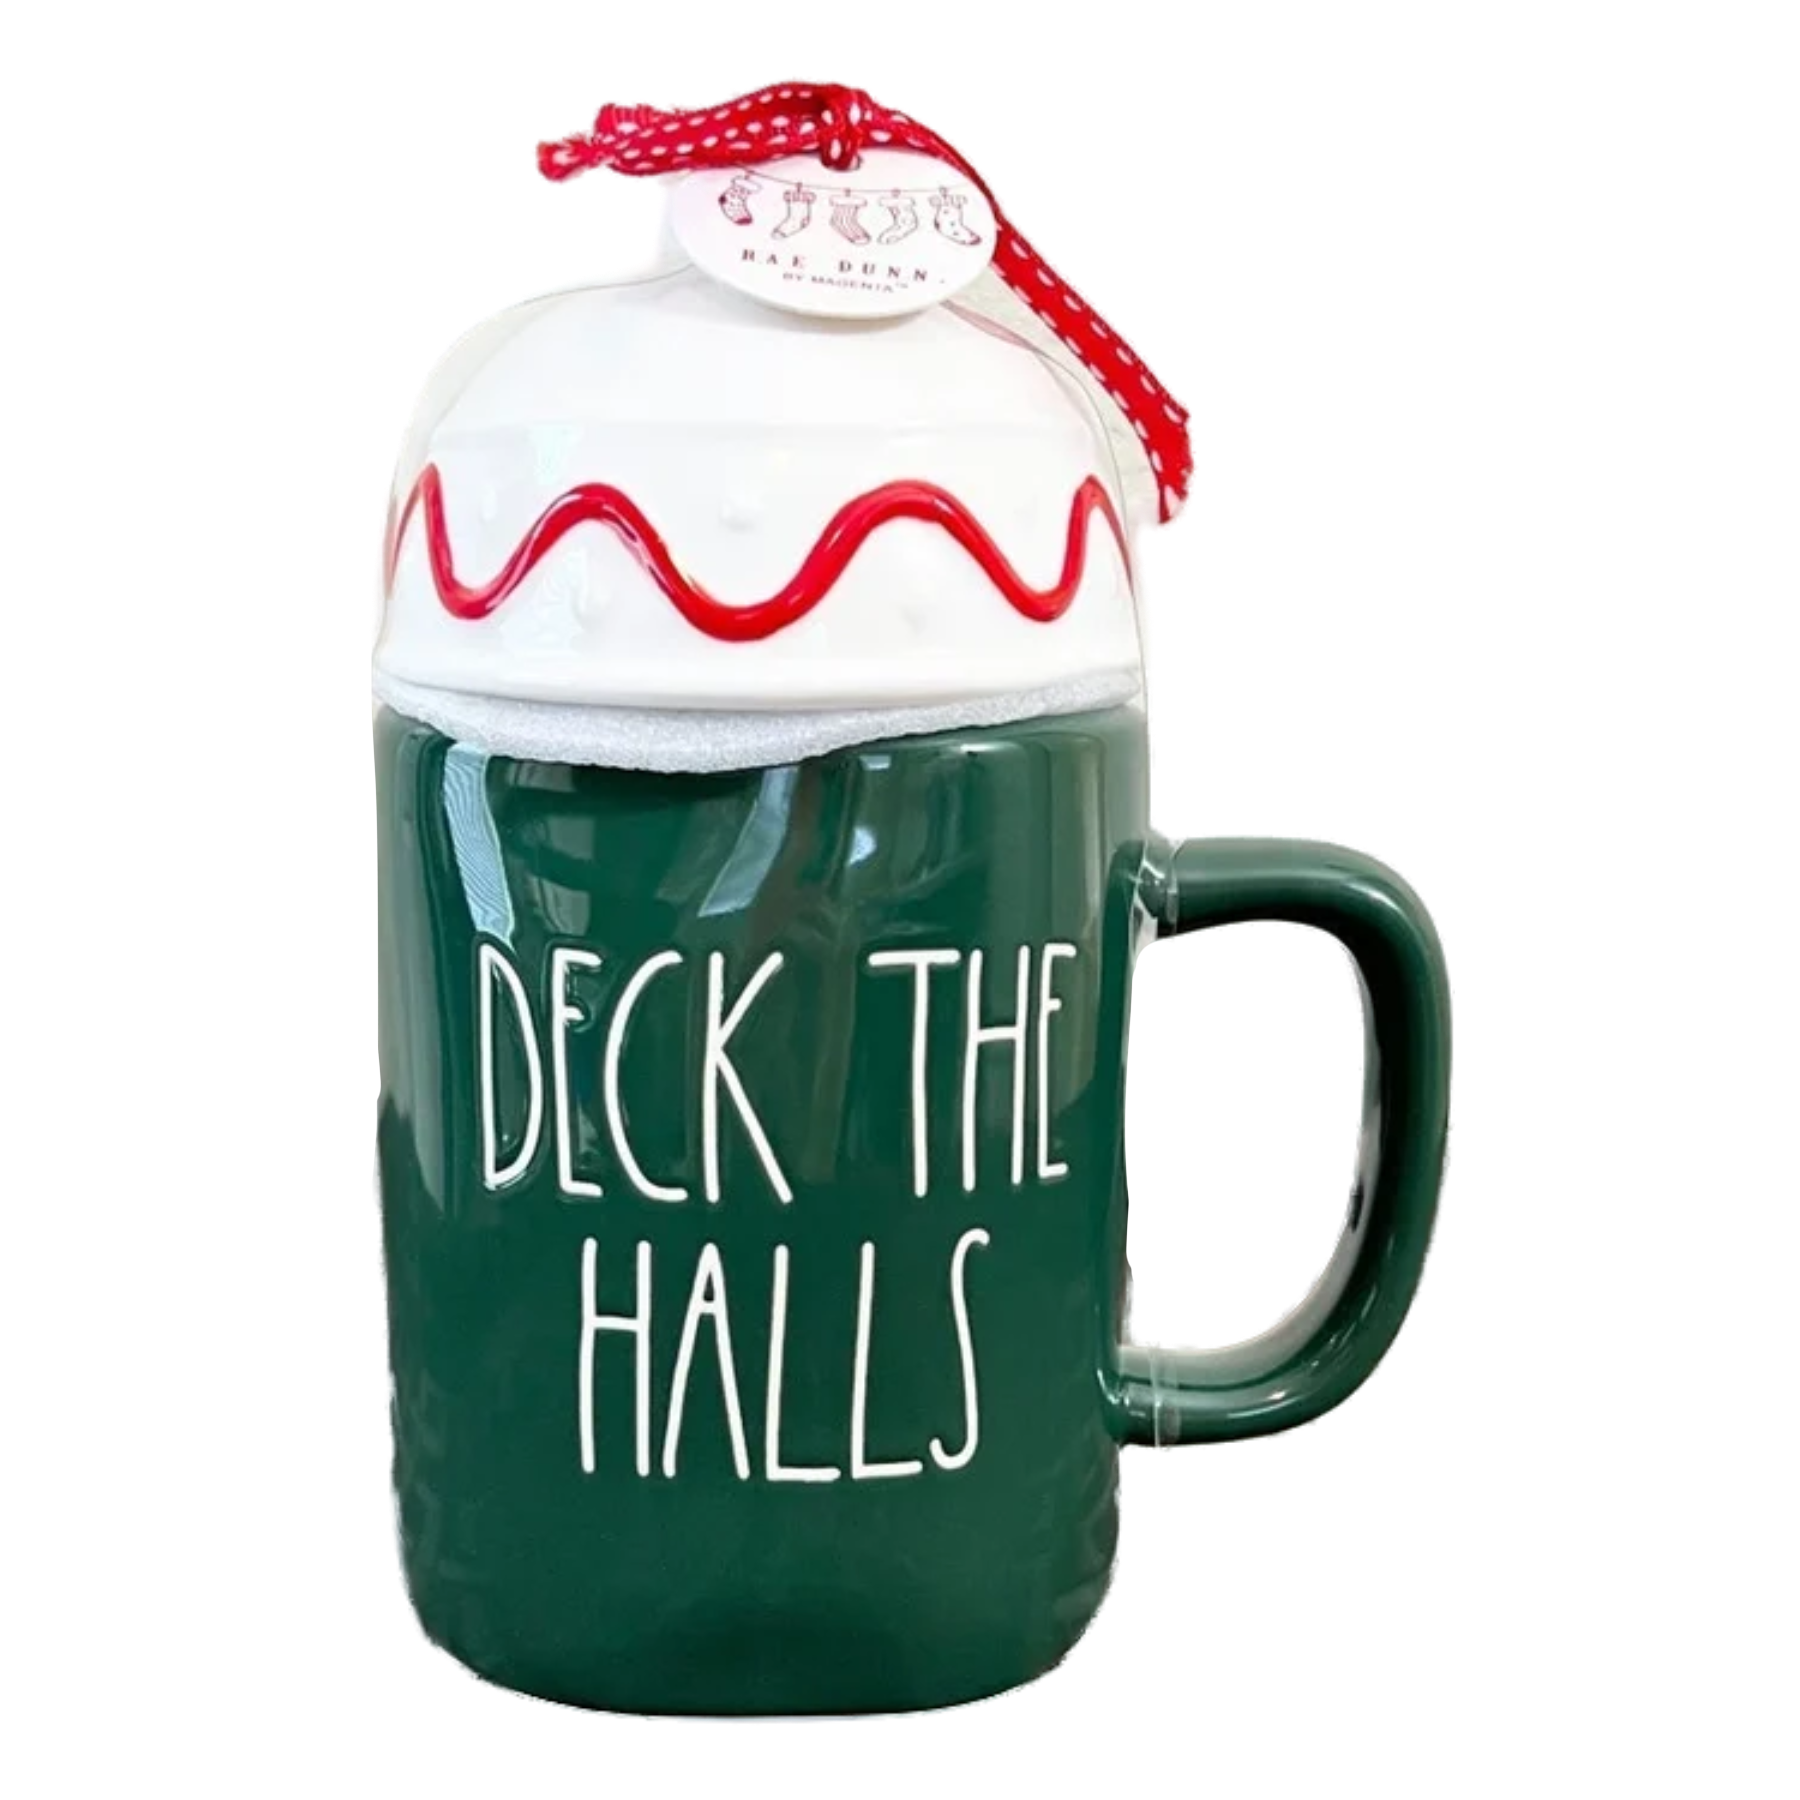 DECK THE HALLS CHRISTMAS PENGUINS' mug - 5 dollar mugs (5dms) ($5 mugs)